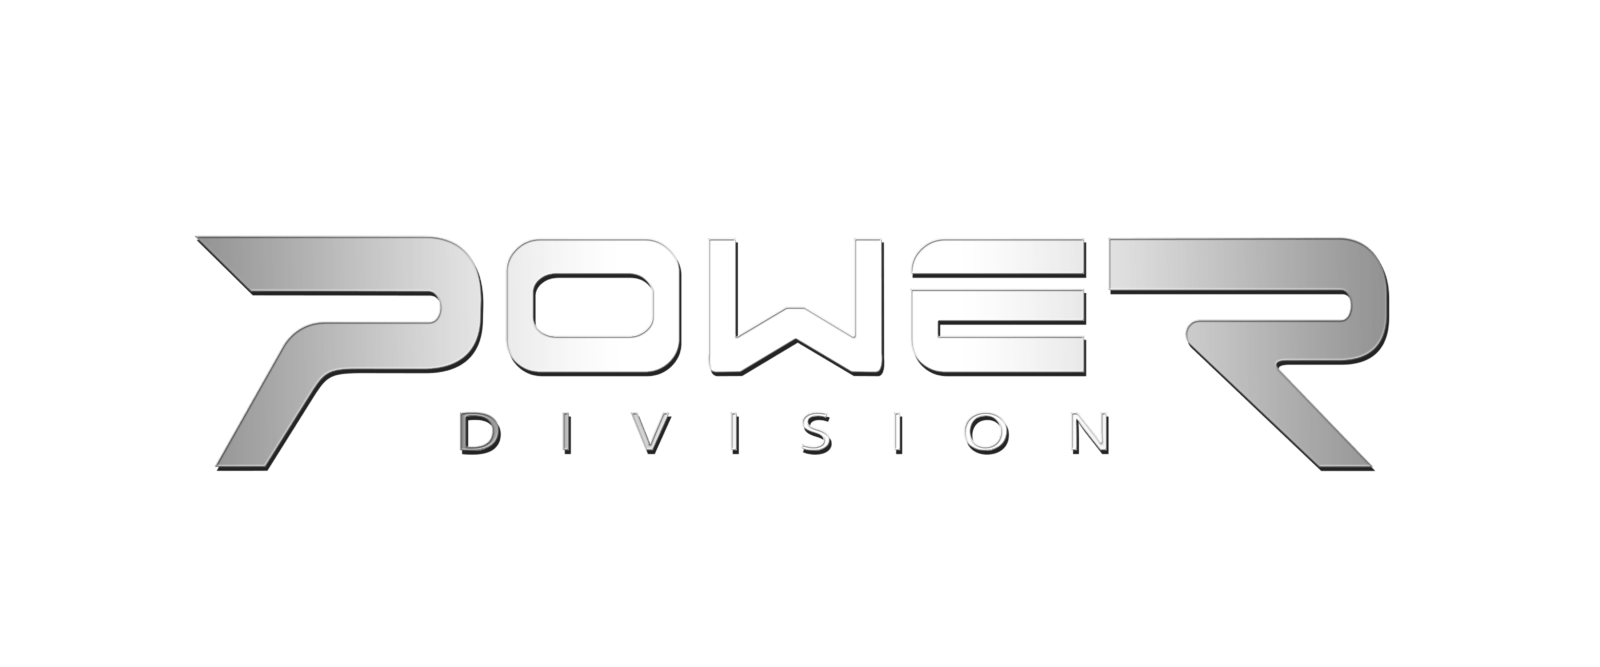 Power Divistion logo